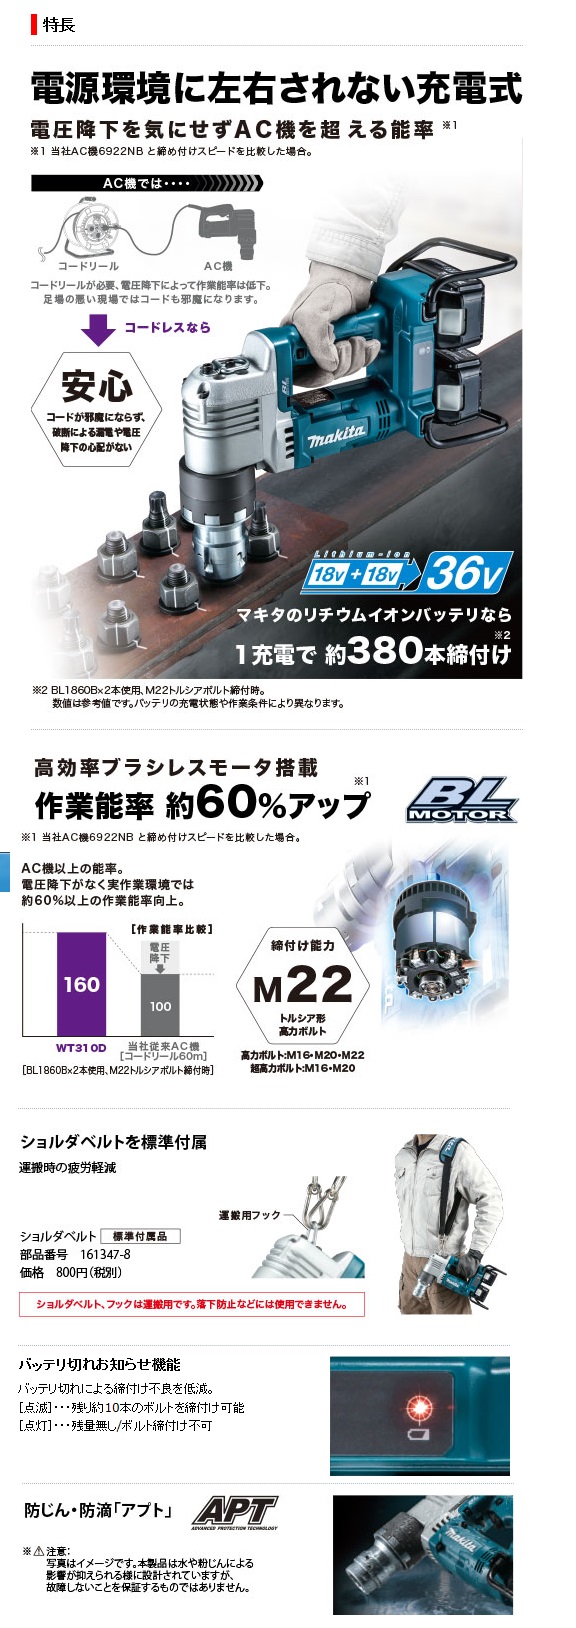 マキタ 充電式シャーレンチ WT310DPG2(6.0Aｈ) / 建築金物通販【秋本